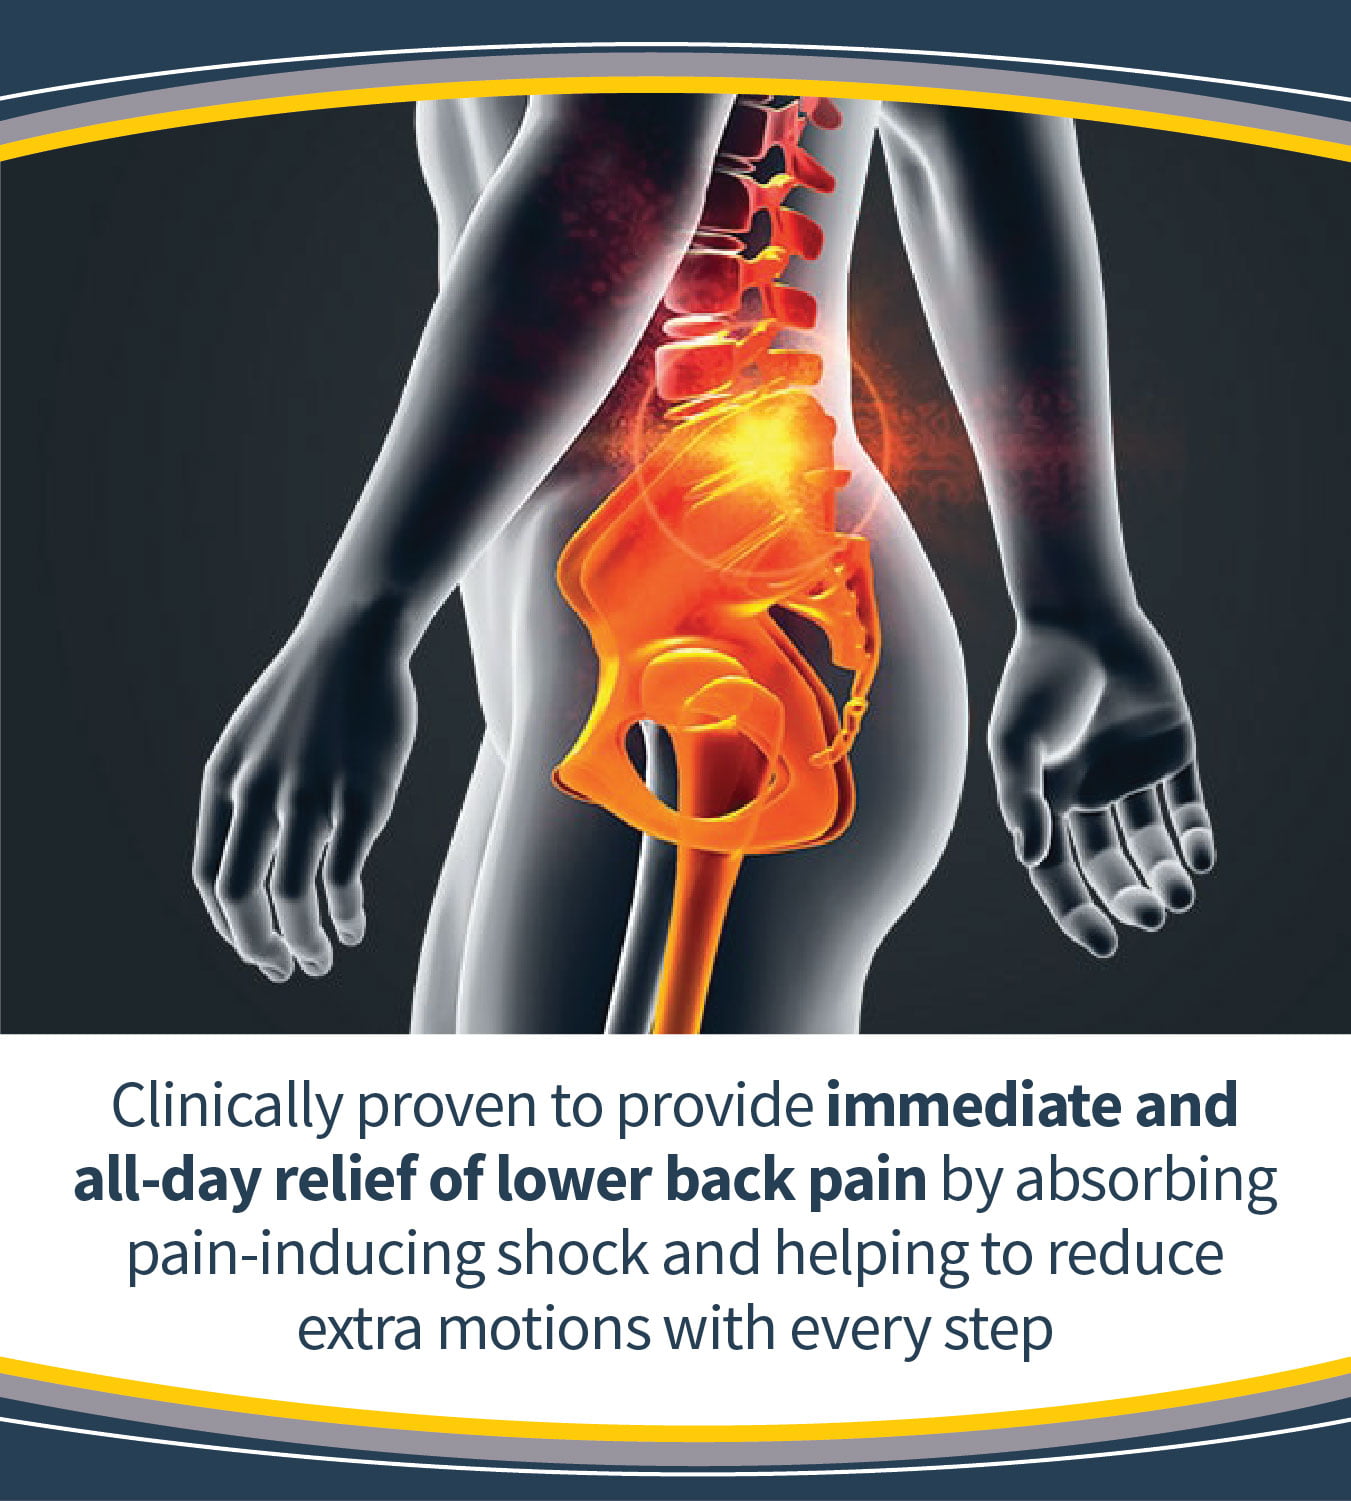 dr scholls lower back pain